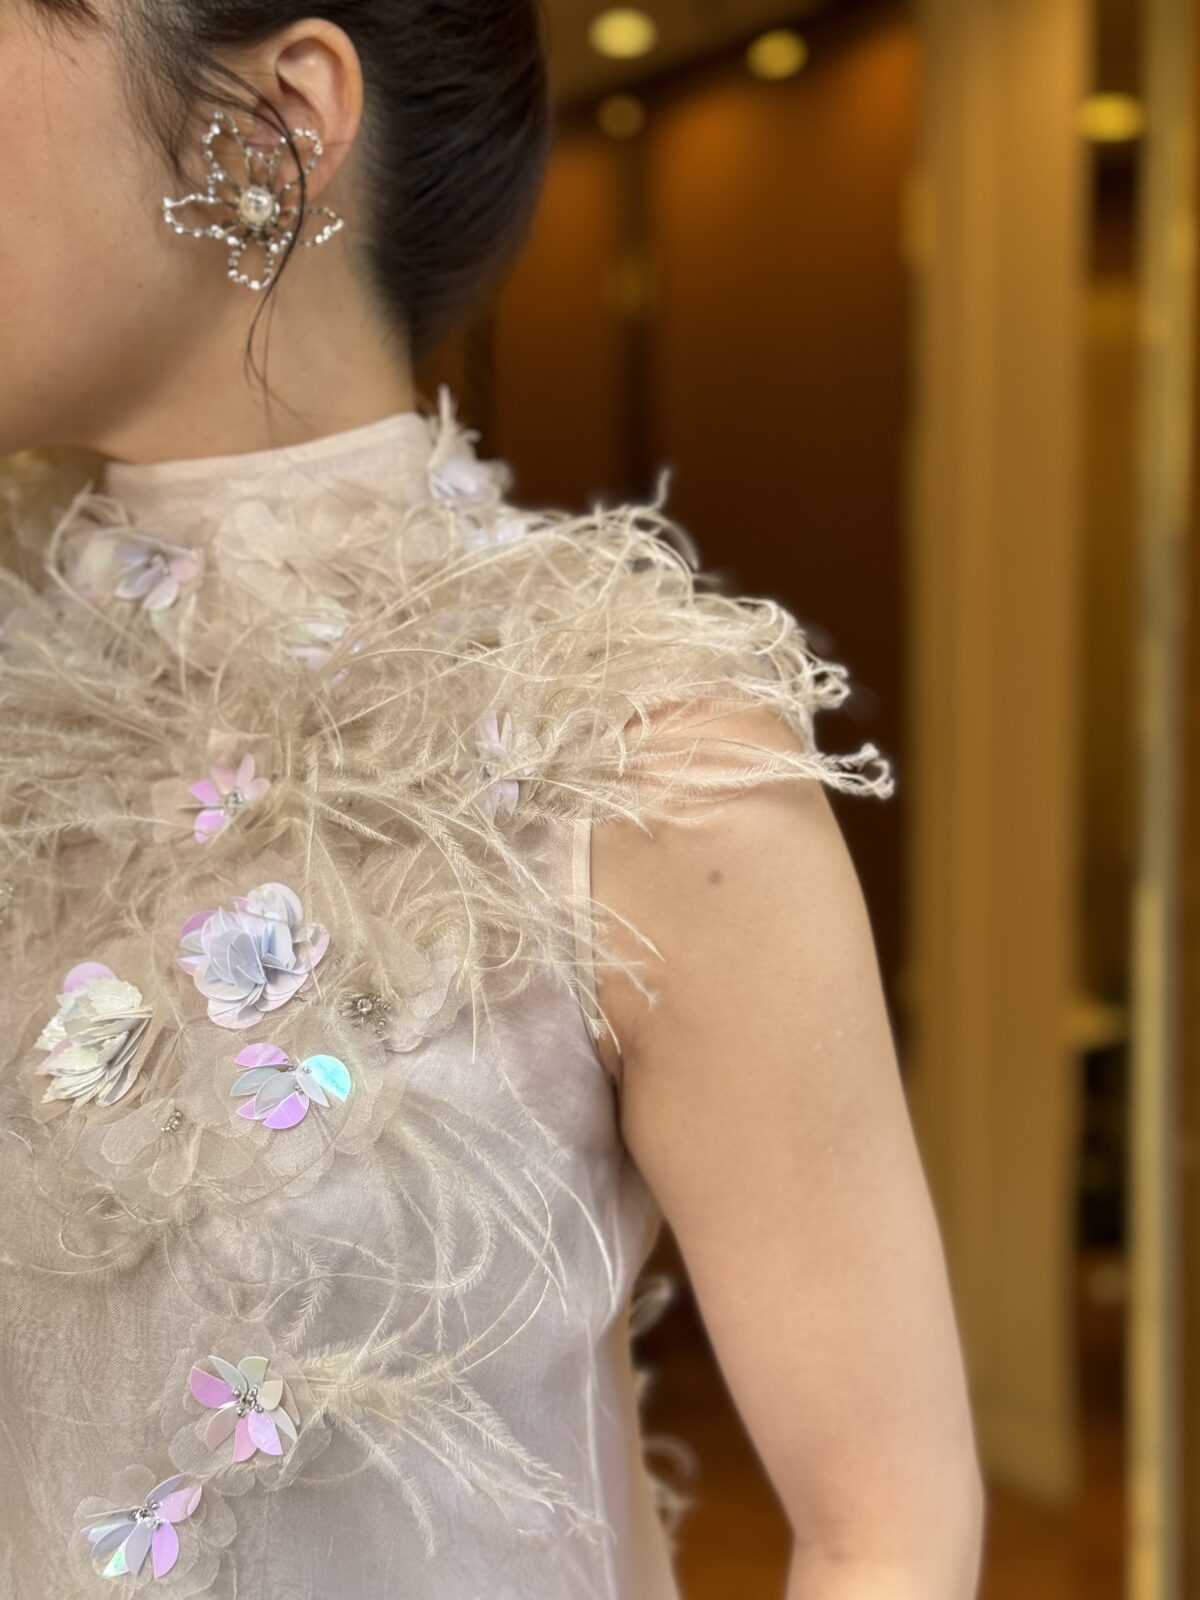 フェザーと立体的な３Dフラワーが美しい大阪の結婚式場におすすめな新作ウェディングドレス